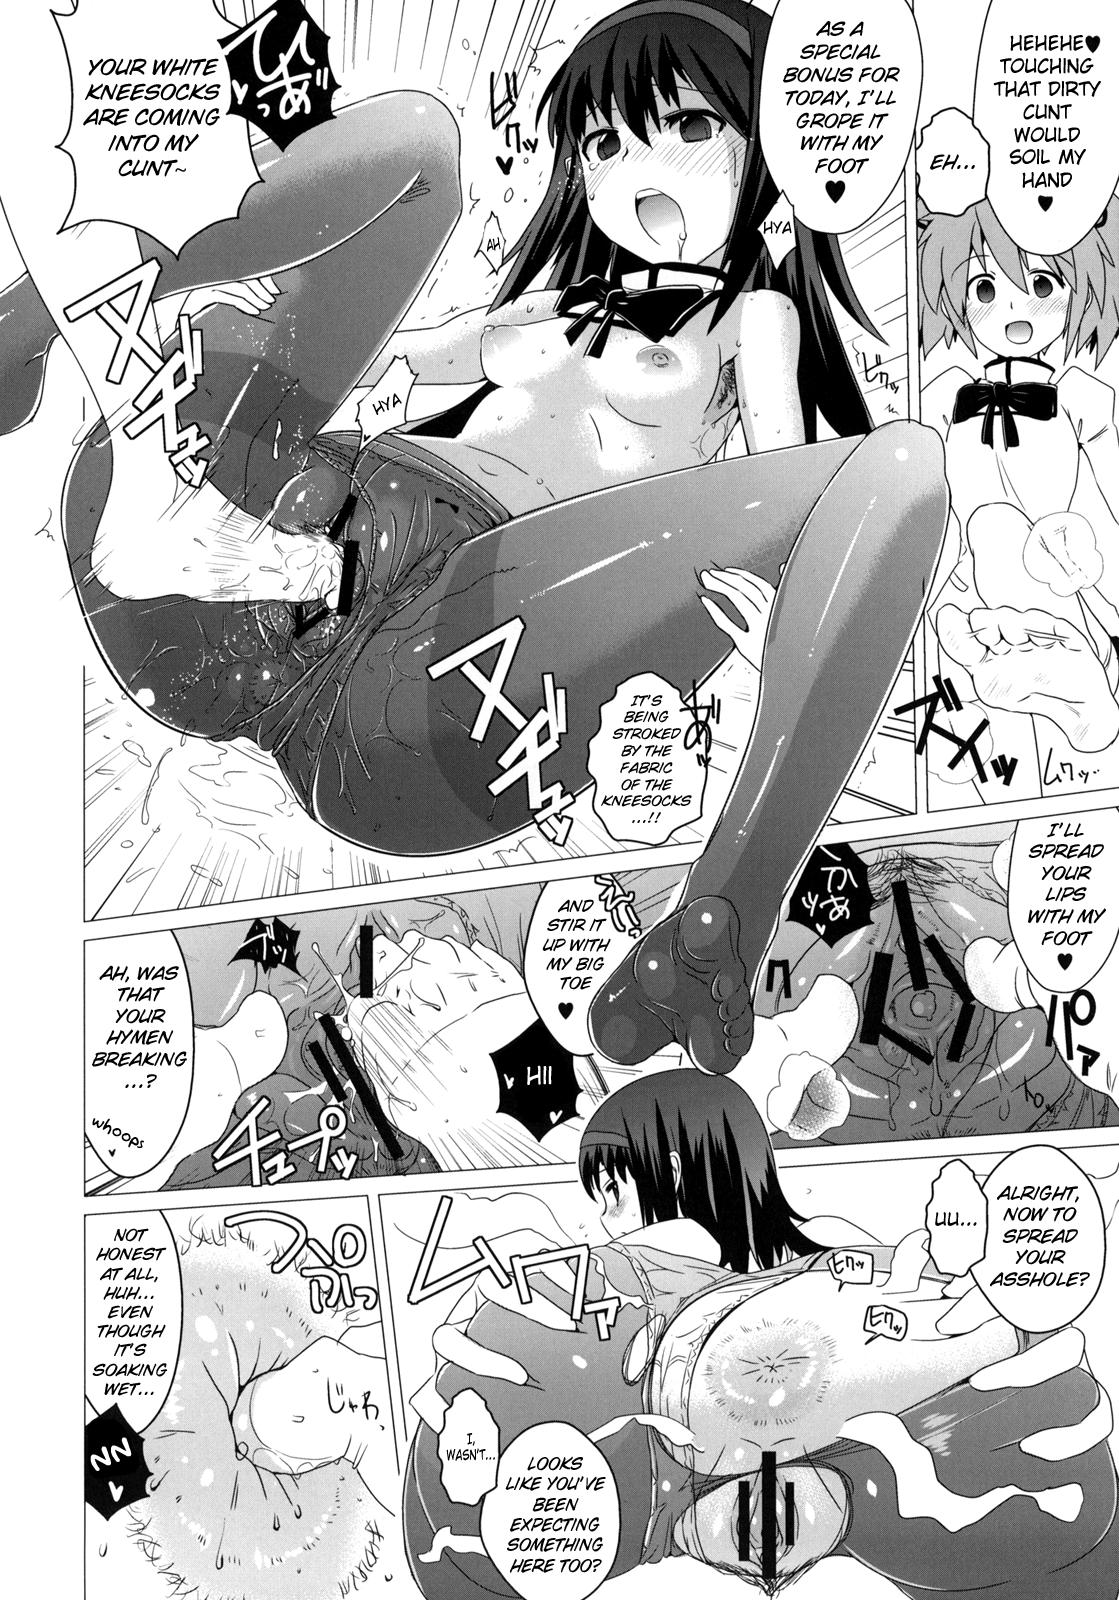 Her Hentai Musume + Omake Paper - Puella magi madoka magica Old Man - Page 11